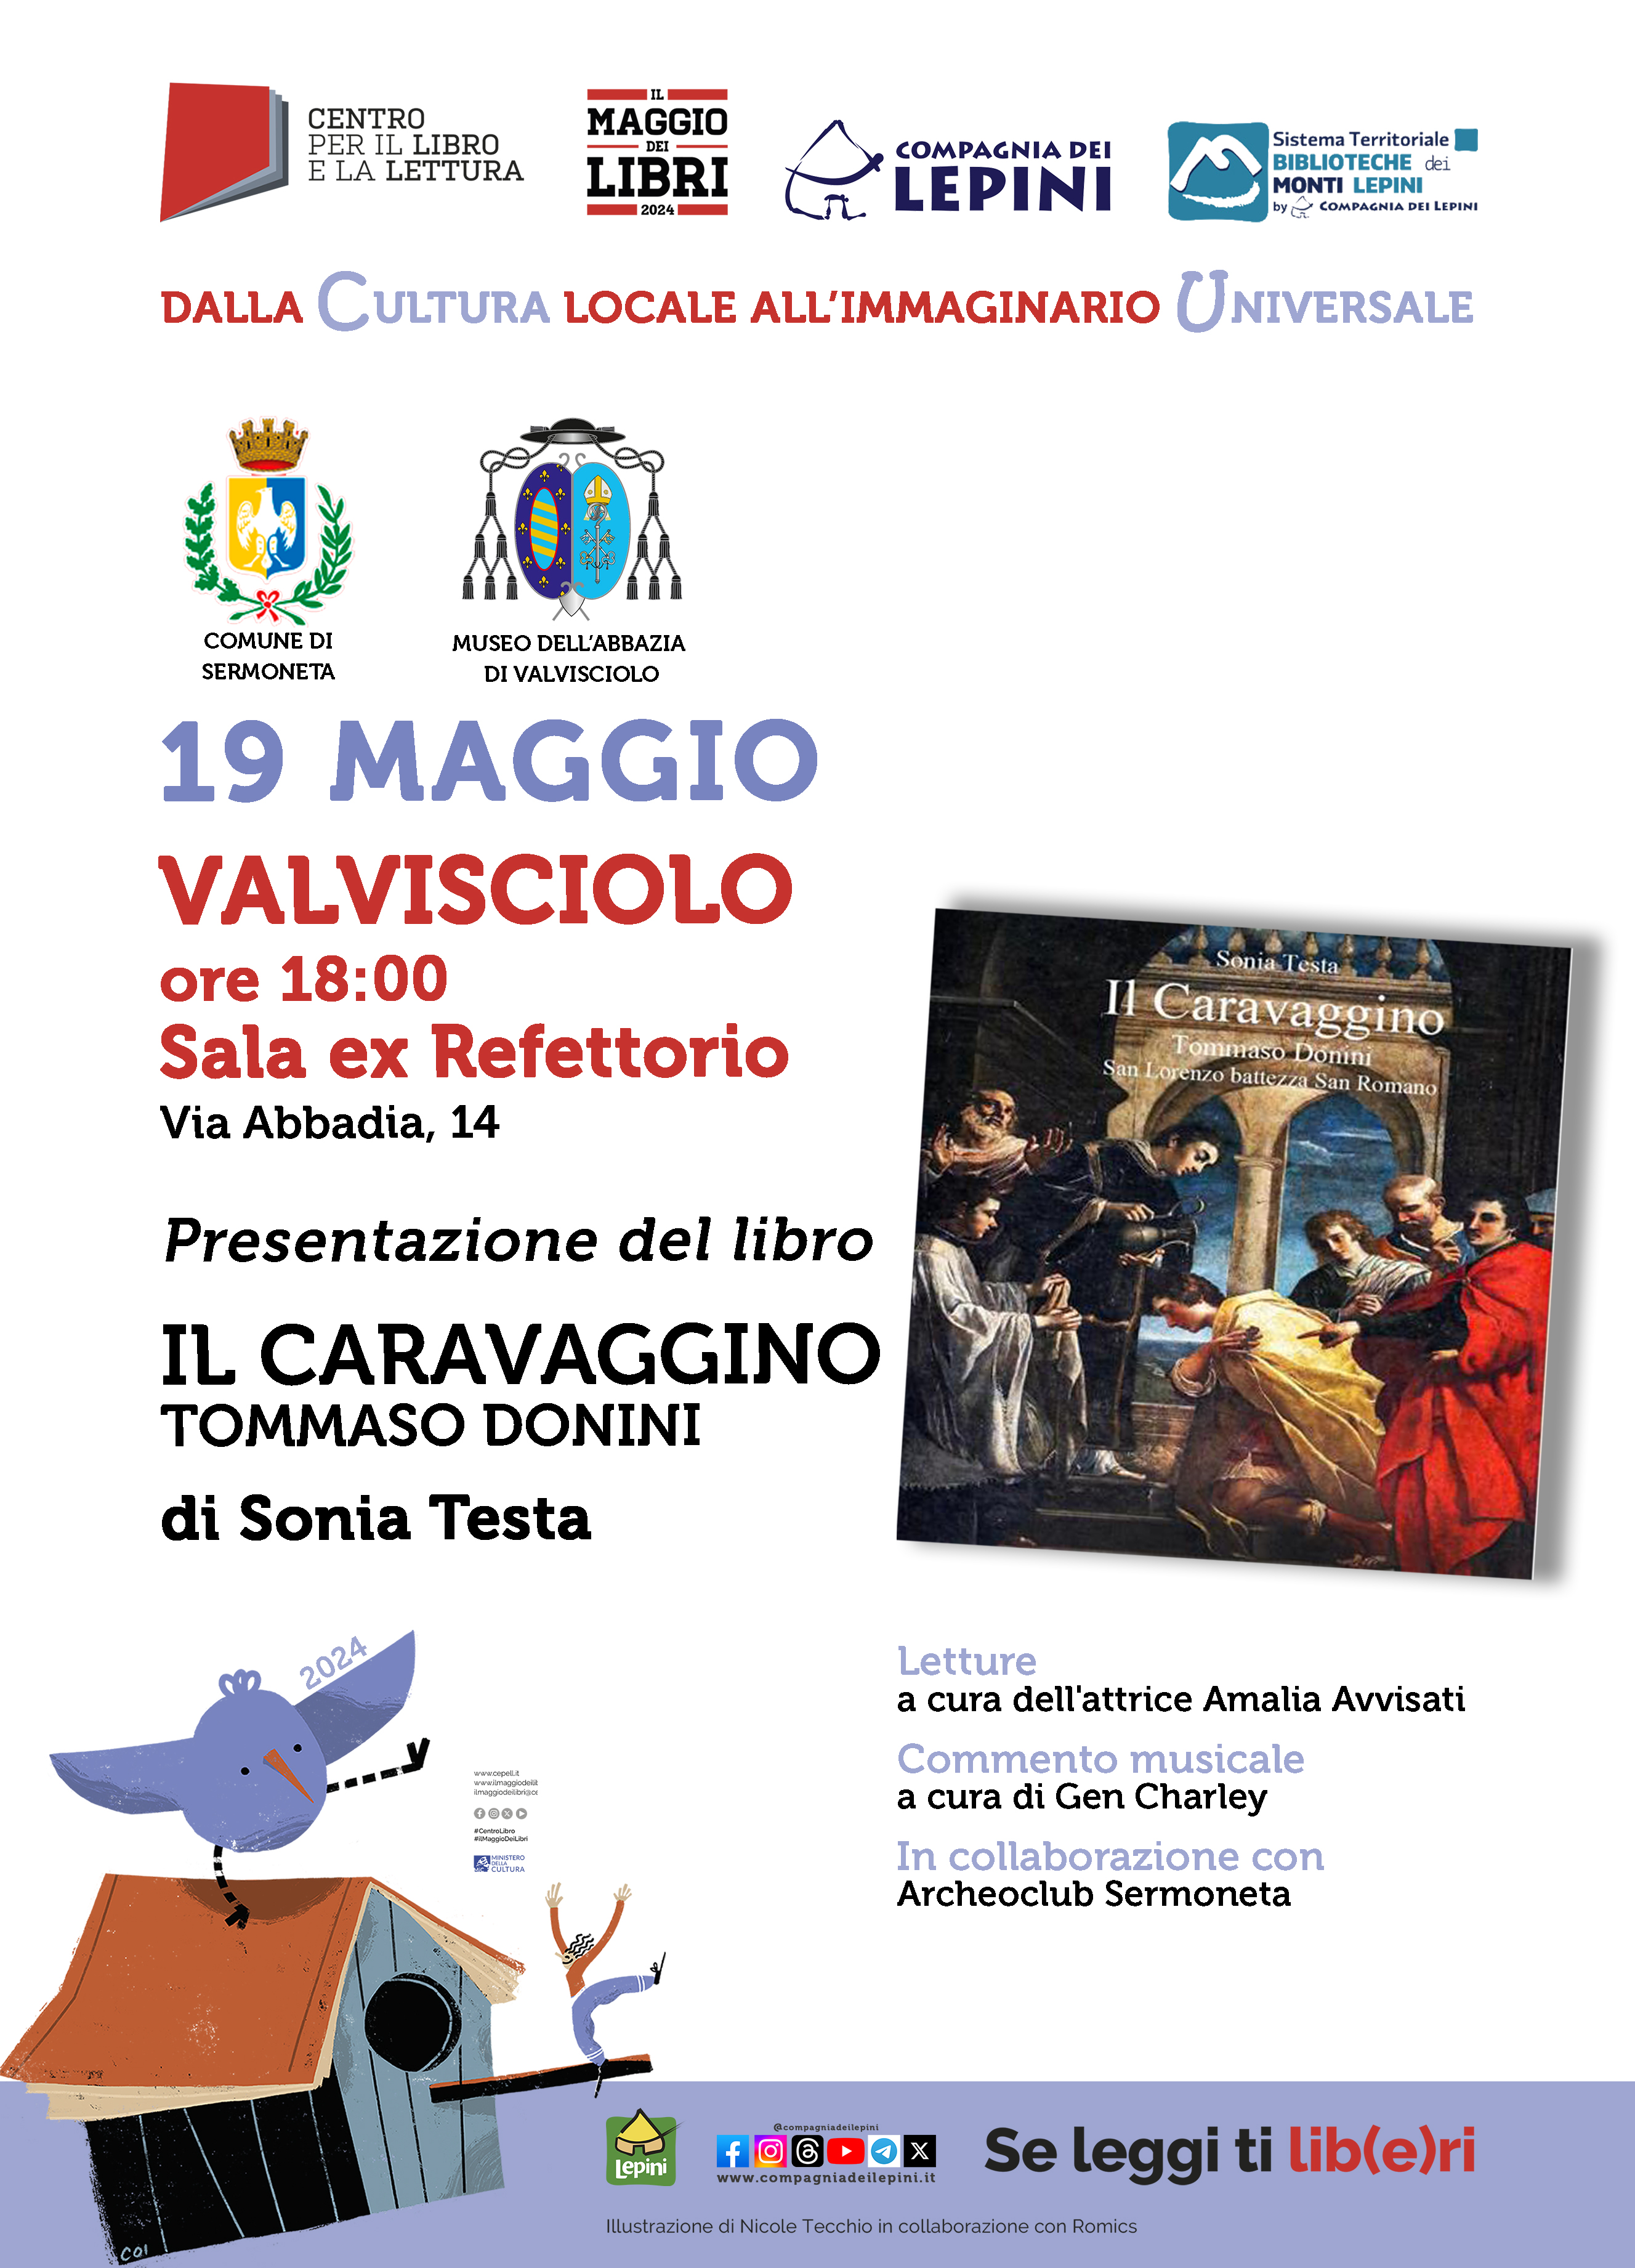 Il Maggio dei Libri a Valvisciolo: Presentazione del libro "Il Caravaggino- Tommaso Donini" di Sonia Testa @ Valvisciolo - Sala Ex refertorio